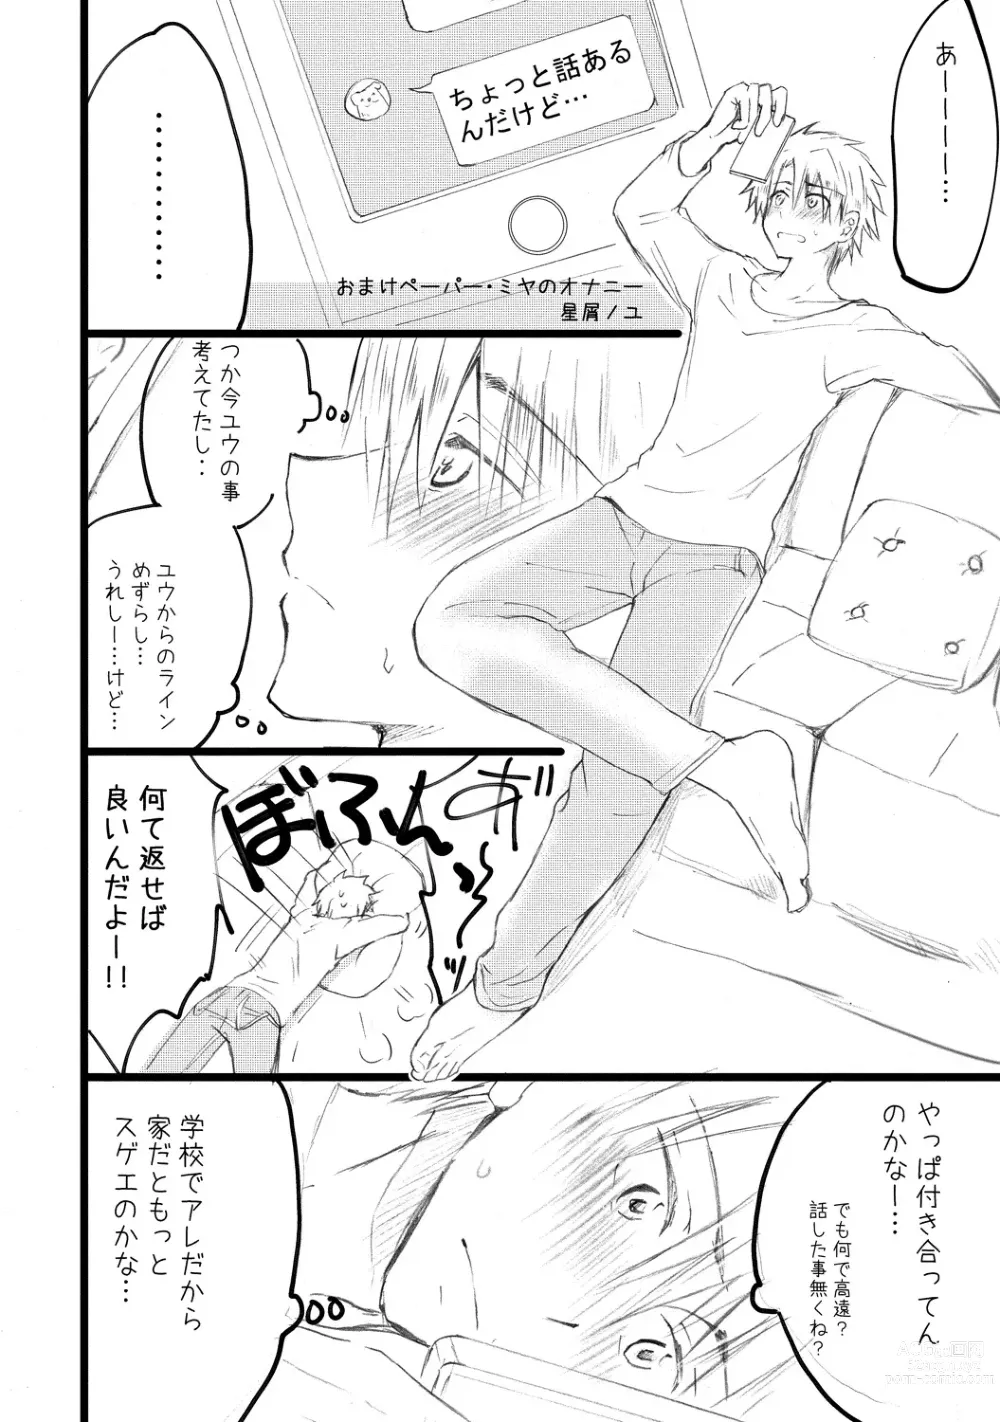 Page 196 of manga Ijou Aishuu Inbiroku [R18] [Digital]]